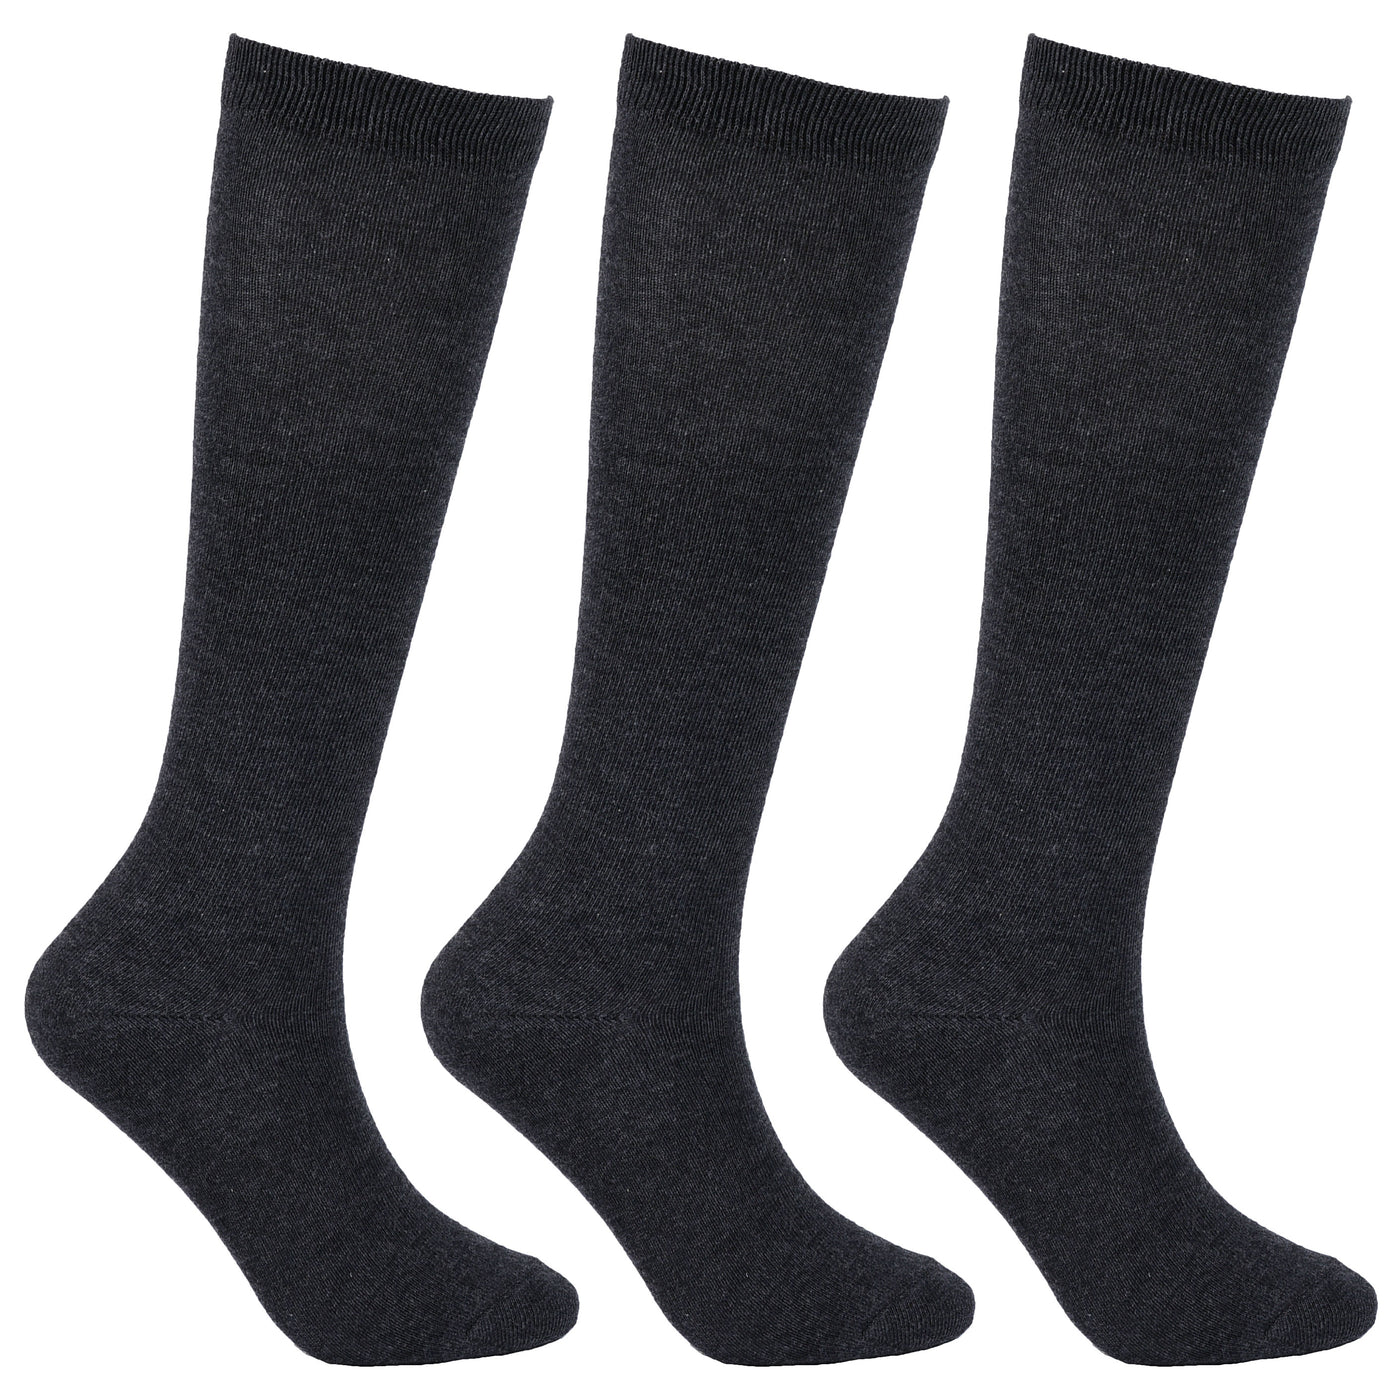 Laulax 3 pares de calcetines escolares hasta la rodilla para niñas de algodón peinado, set de regalo, negro, talla 4-7